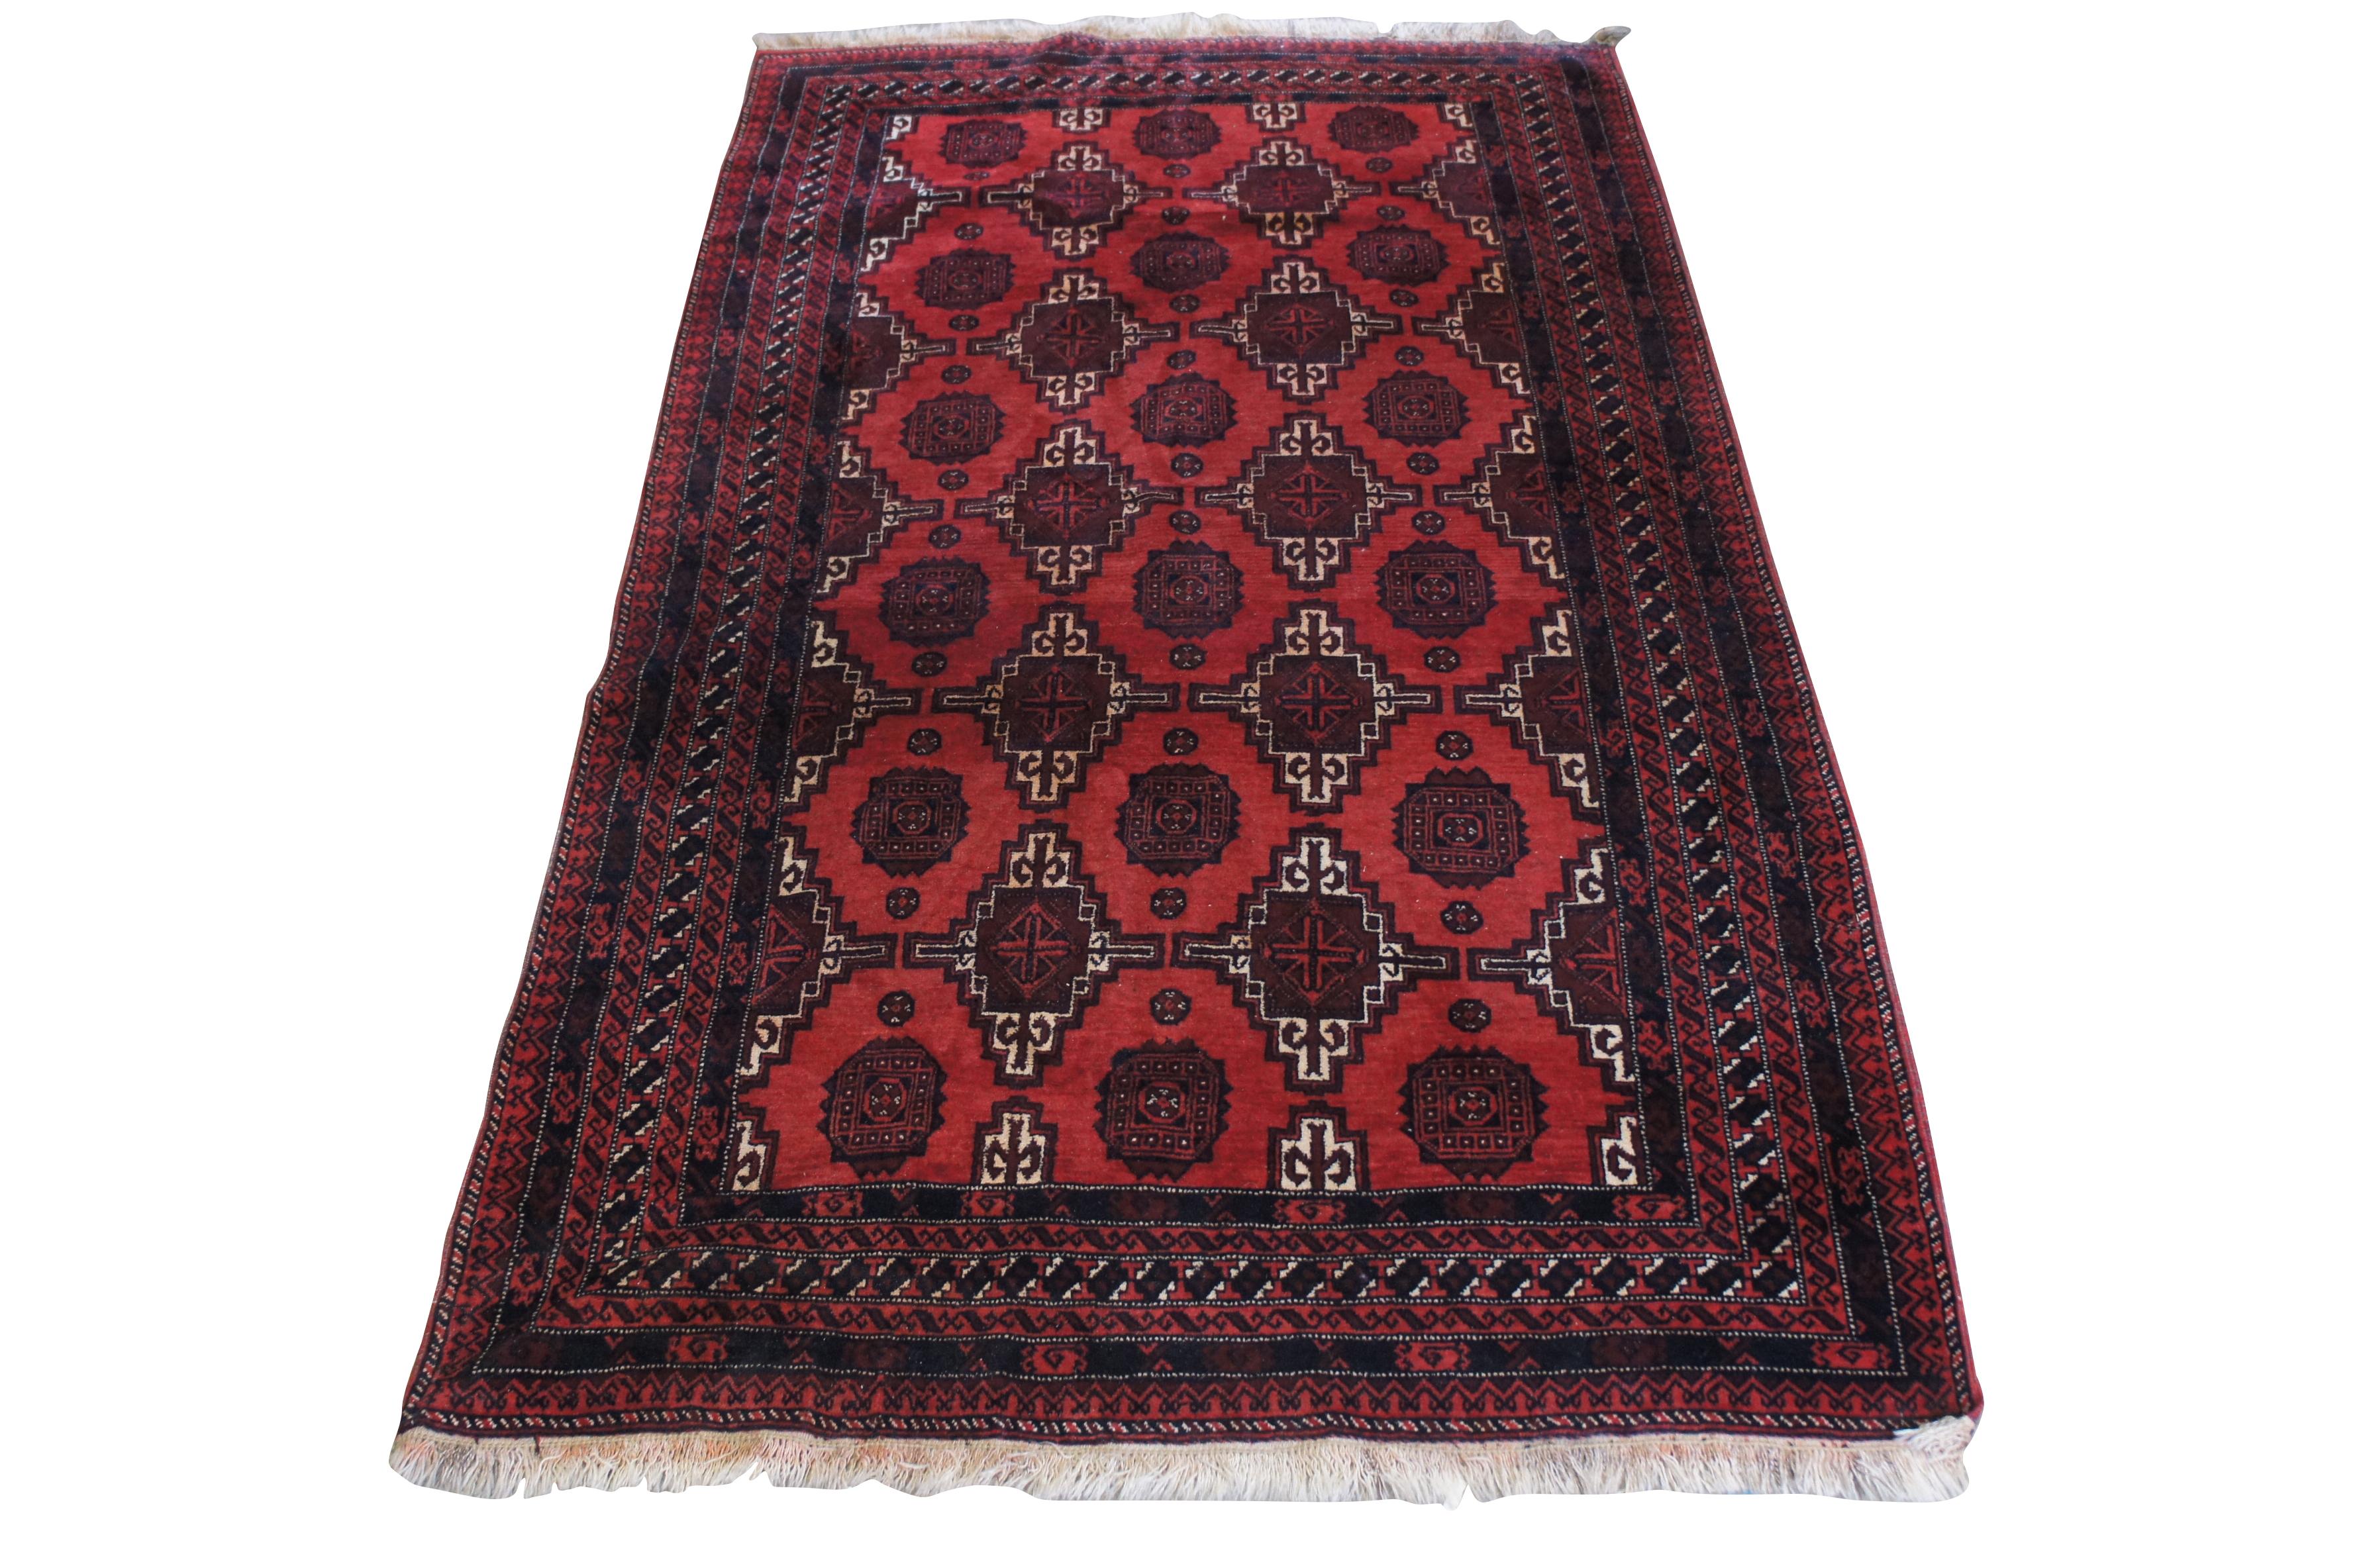 Un magnifique tapis géométrique en laine nouée à la main.  Caractéristiques des rouges et des beiges 

Dimensions :
52.5